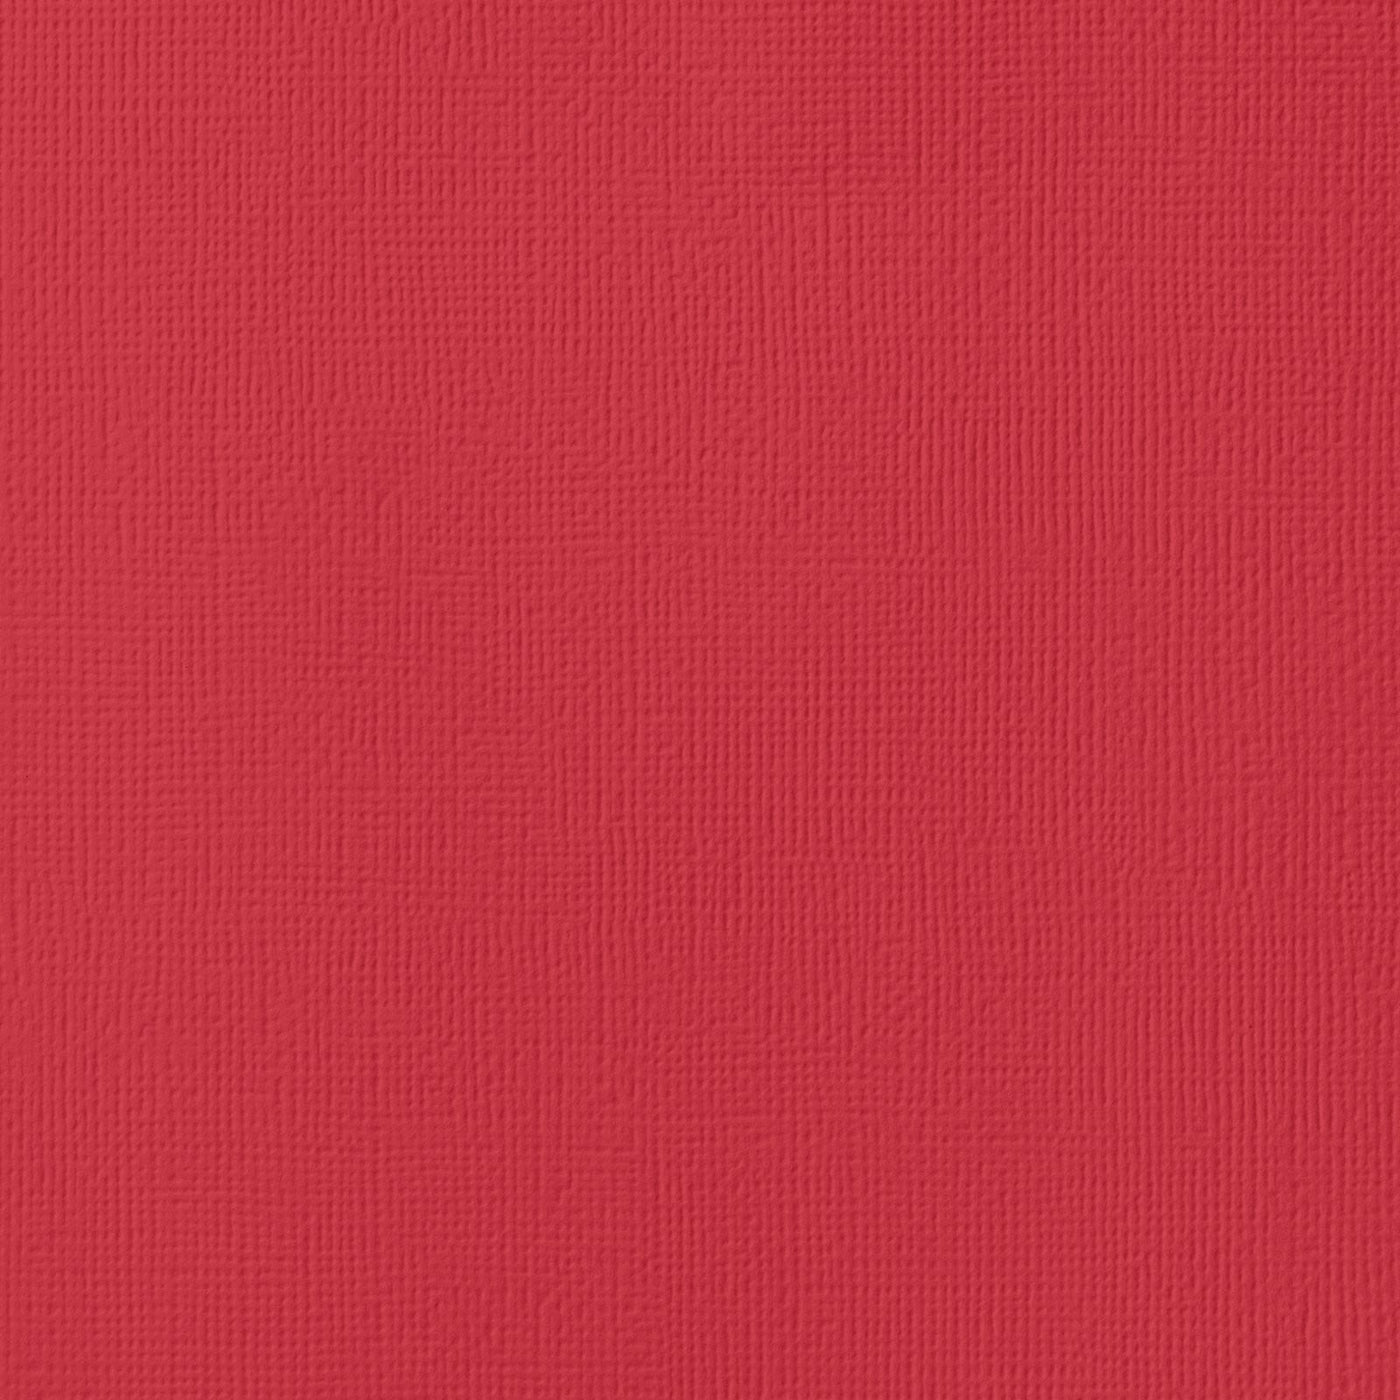 Blush Red Dark – 12x12 Dark Red Cardstock AC Textured Scrapbook Paper Single